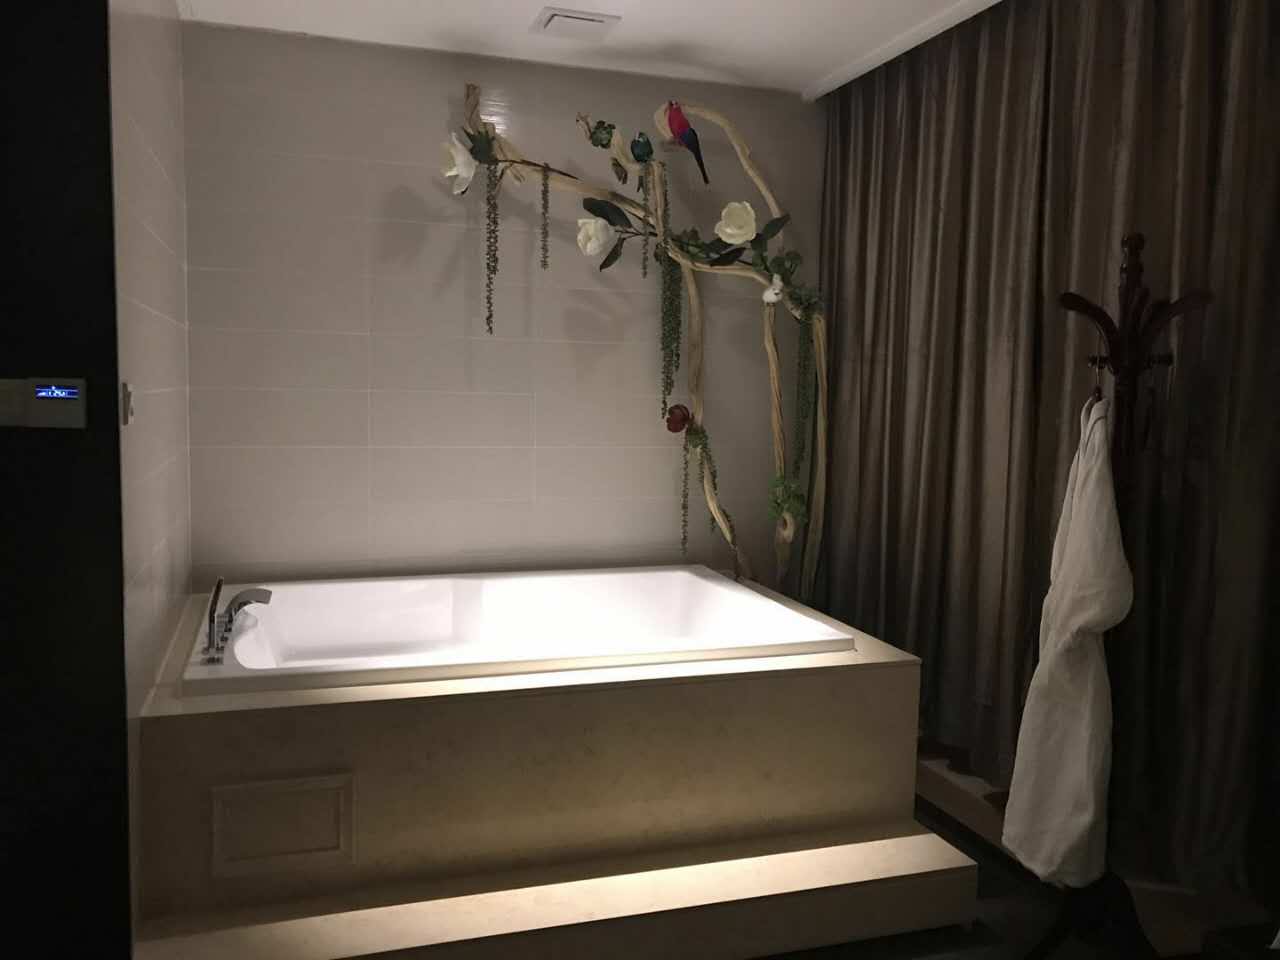 广州天河区菀式私密洗浴中心简单介绍